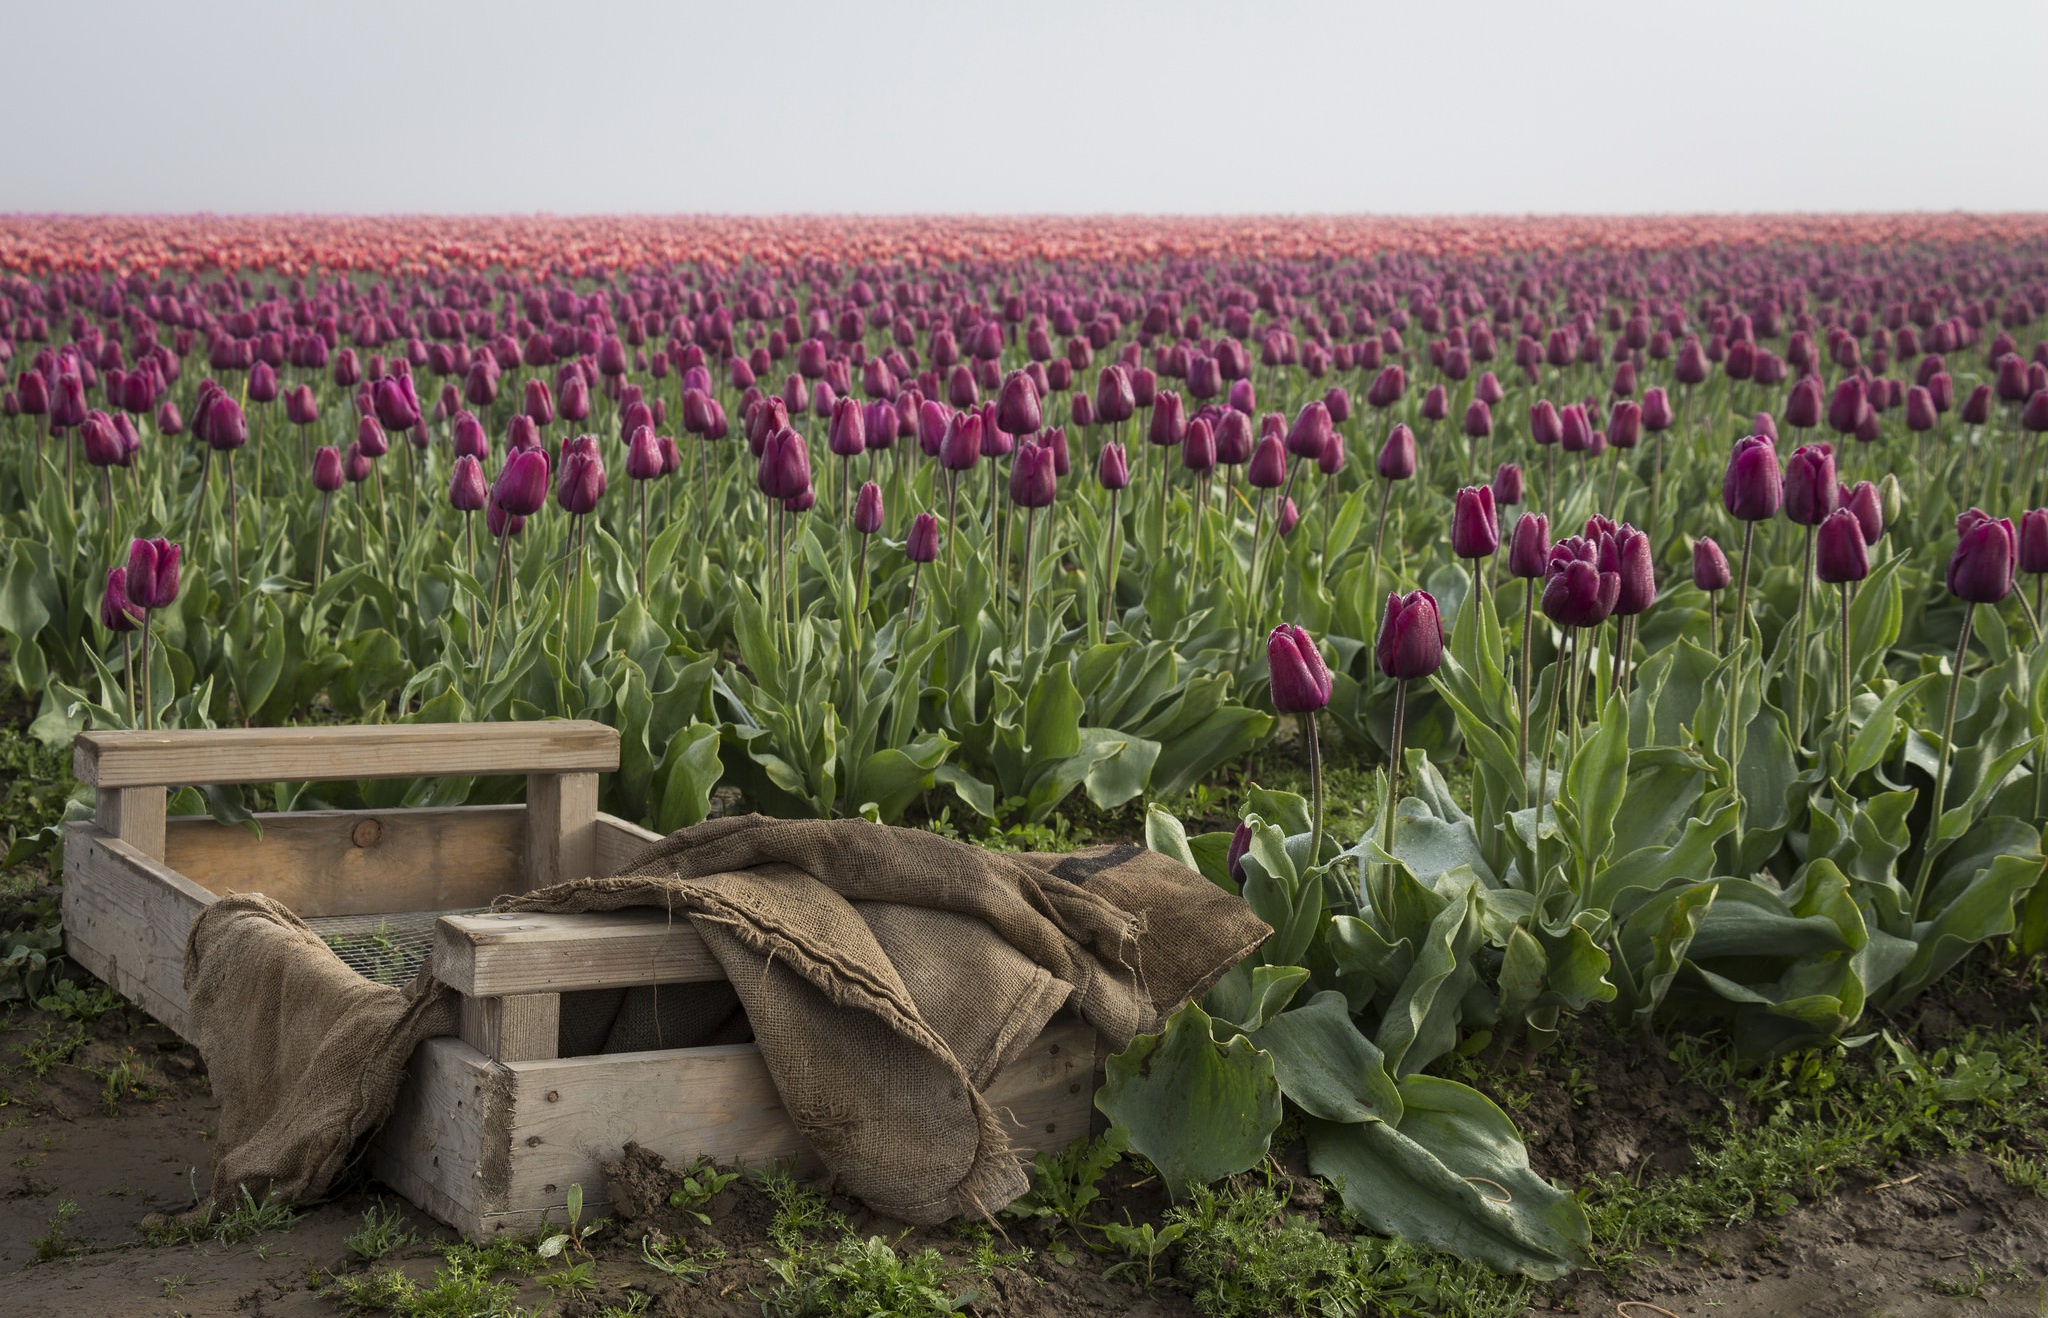 General 2048x1318 flowers field landscape tulips